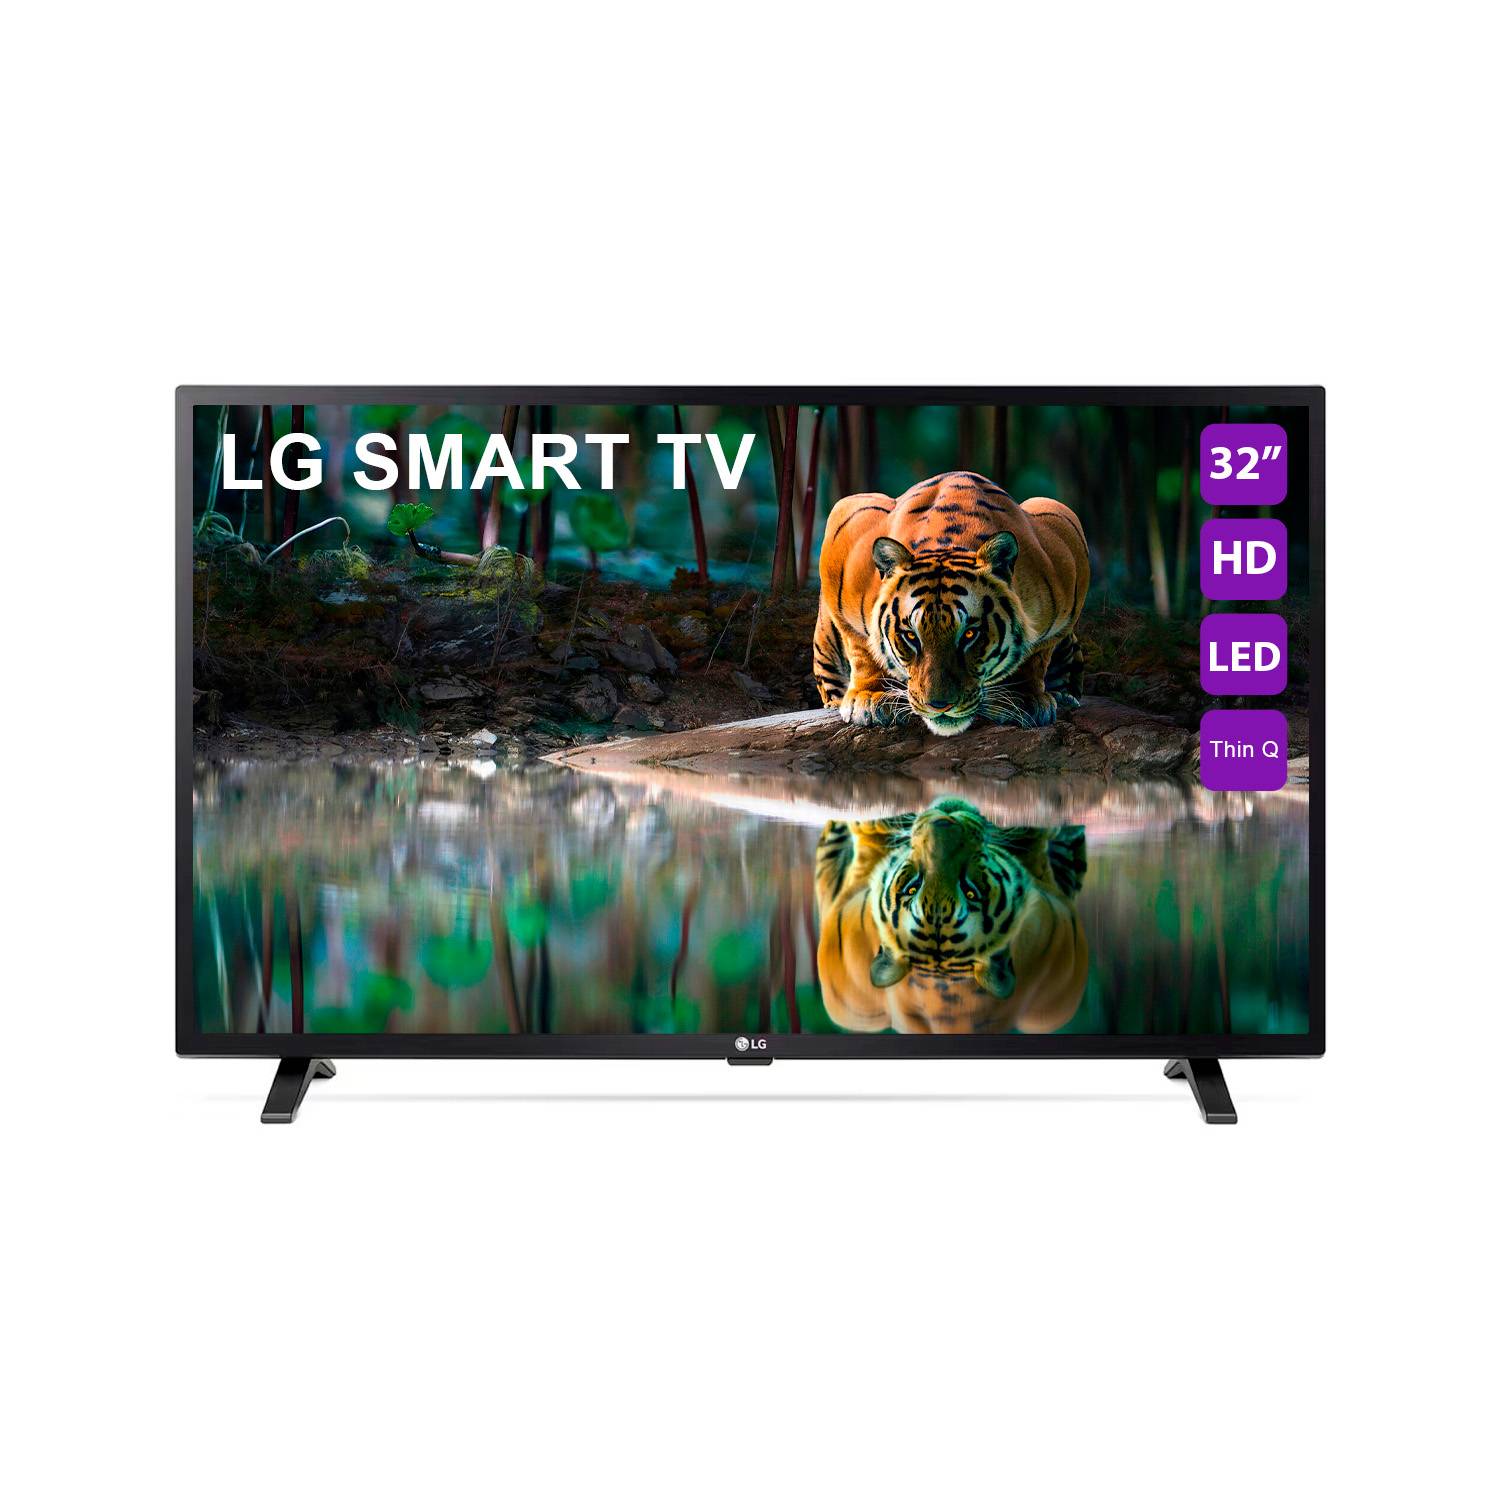 LG Televisor LG 32 LED Smart TV HD LQ631